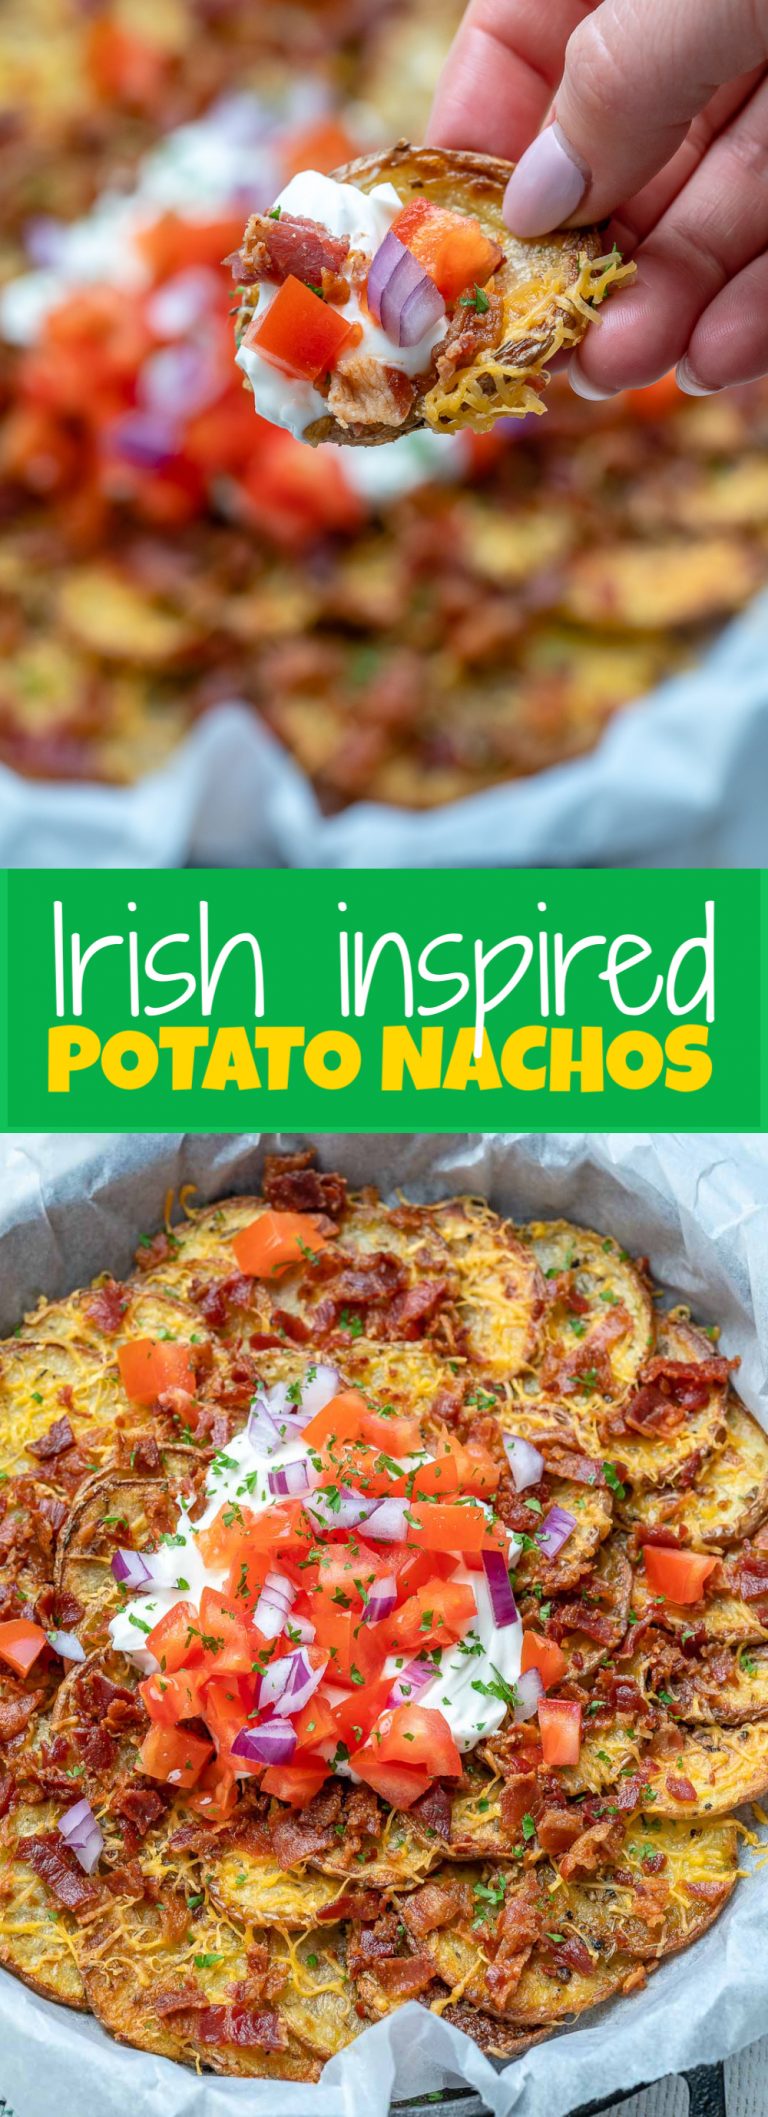 Irish inspired Potato Nachos | Clean Food Crush